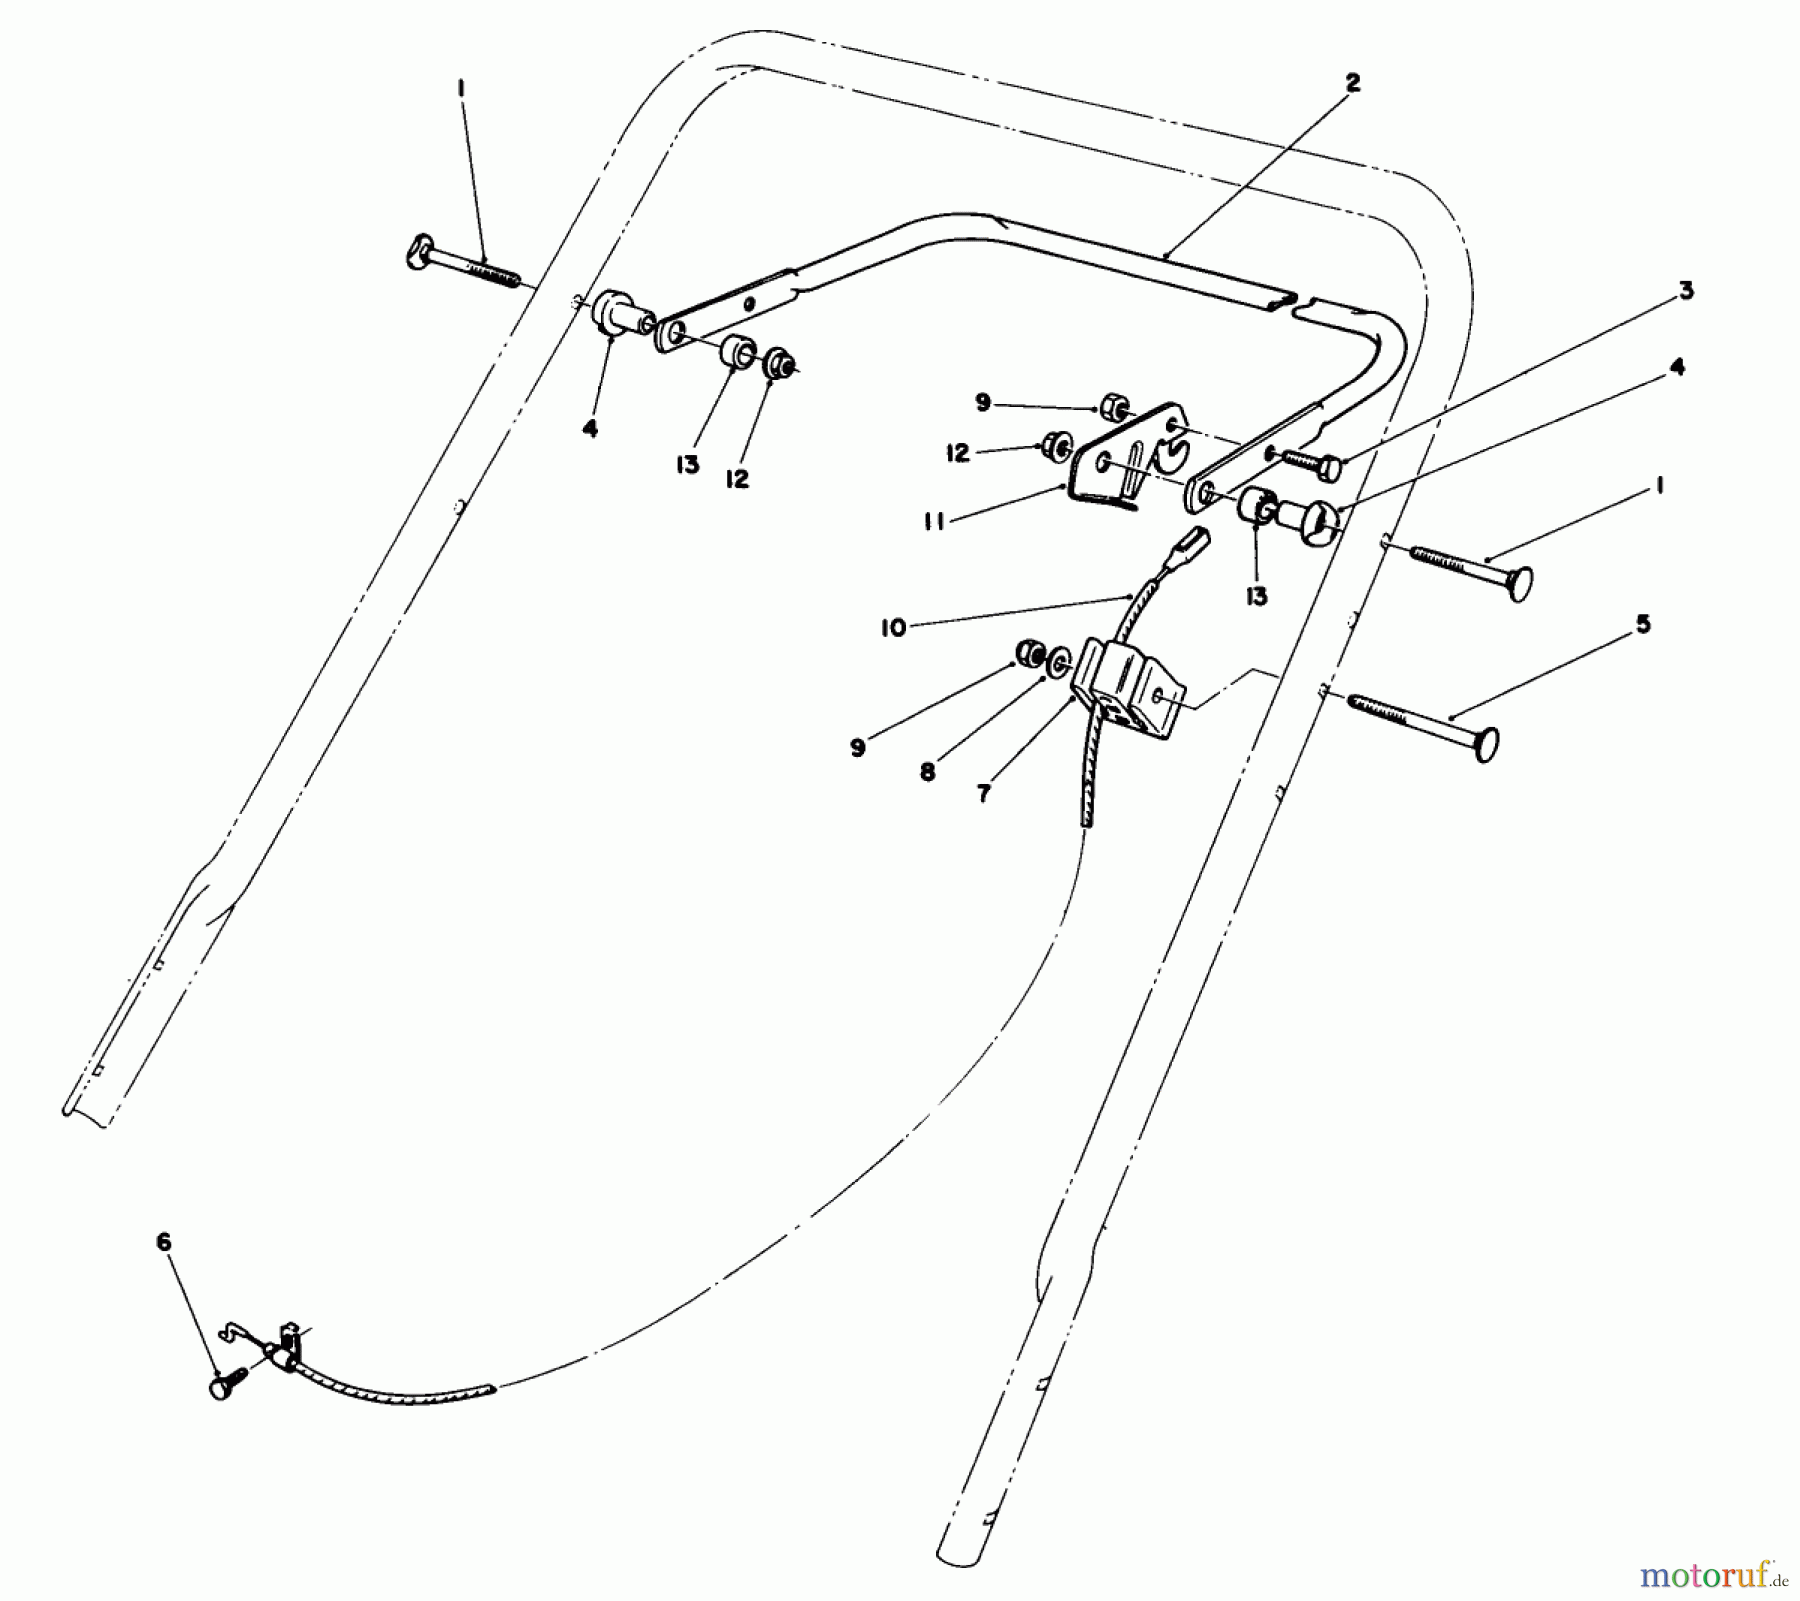  Toro Neu Mowers, Walk-Behind Seite 1 20588 - Toro Lawnmower, 1987 (7000001-7999999) CONTROL ASSEMBLY